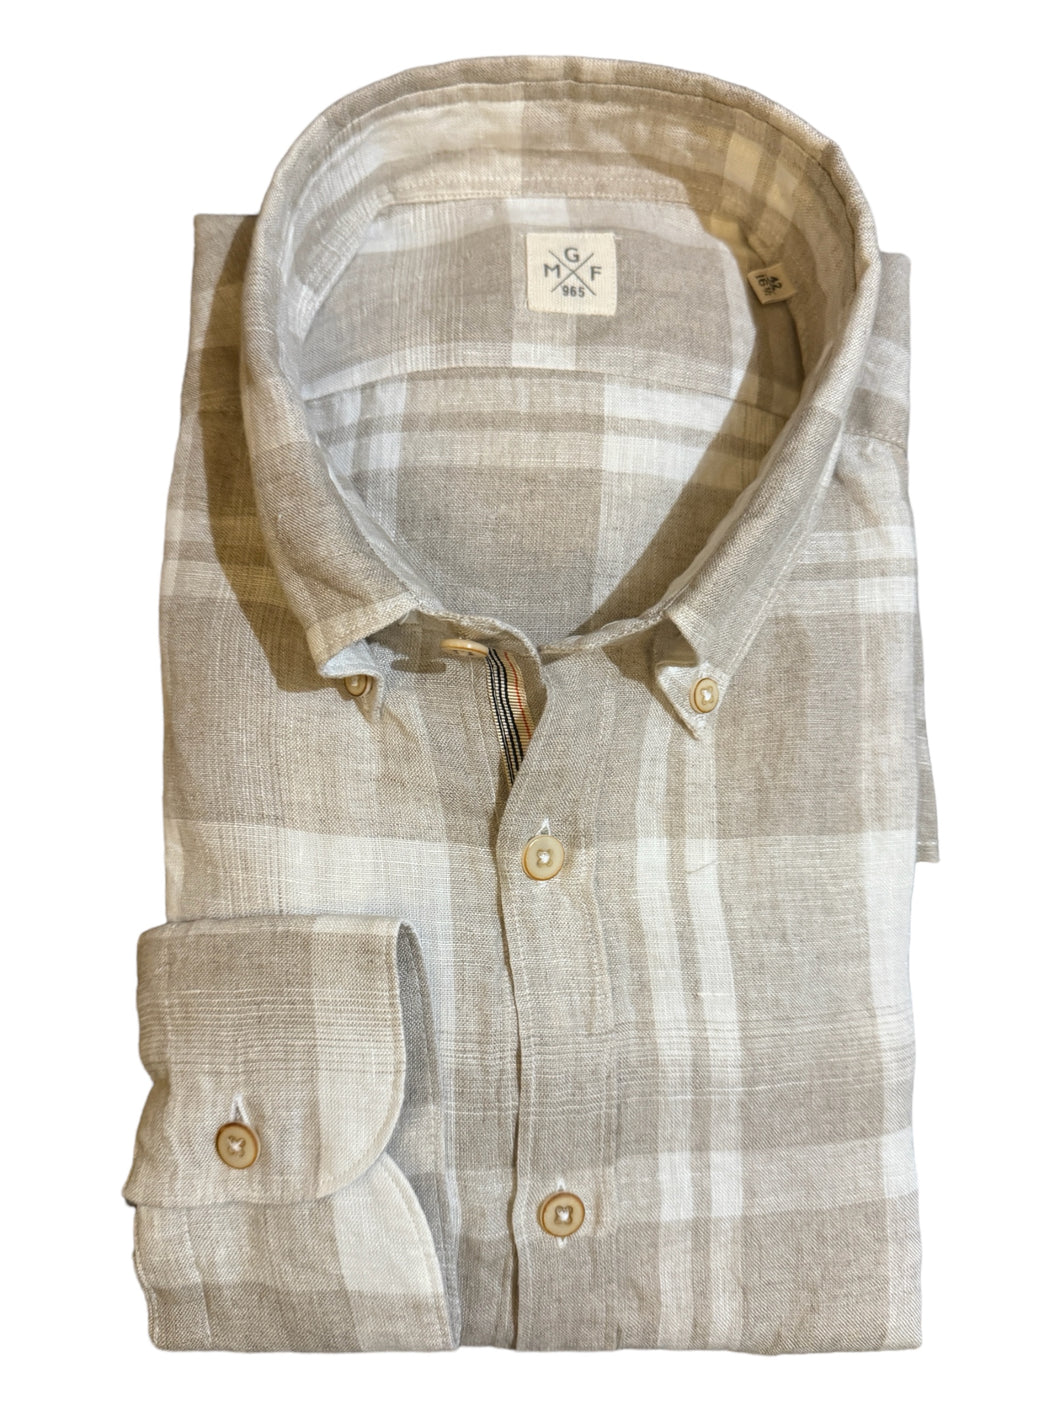 GMF 965 Linen/Cotton BD Shirt Beige/White Plaid